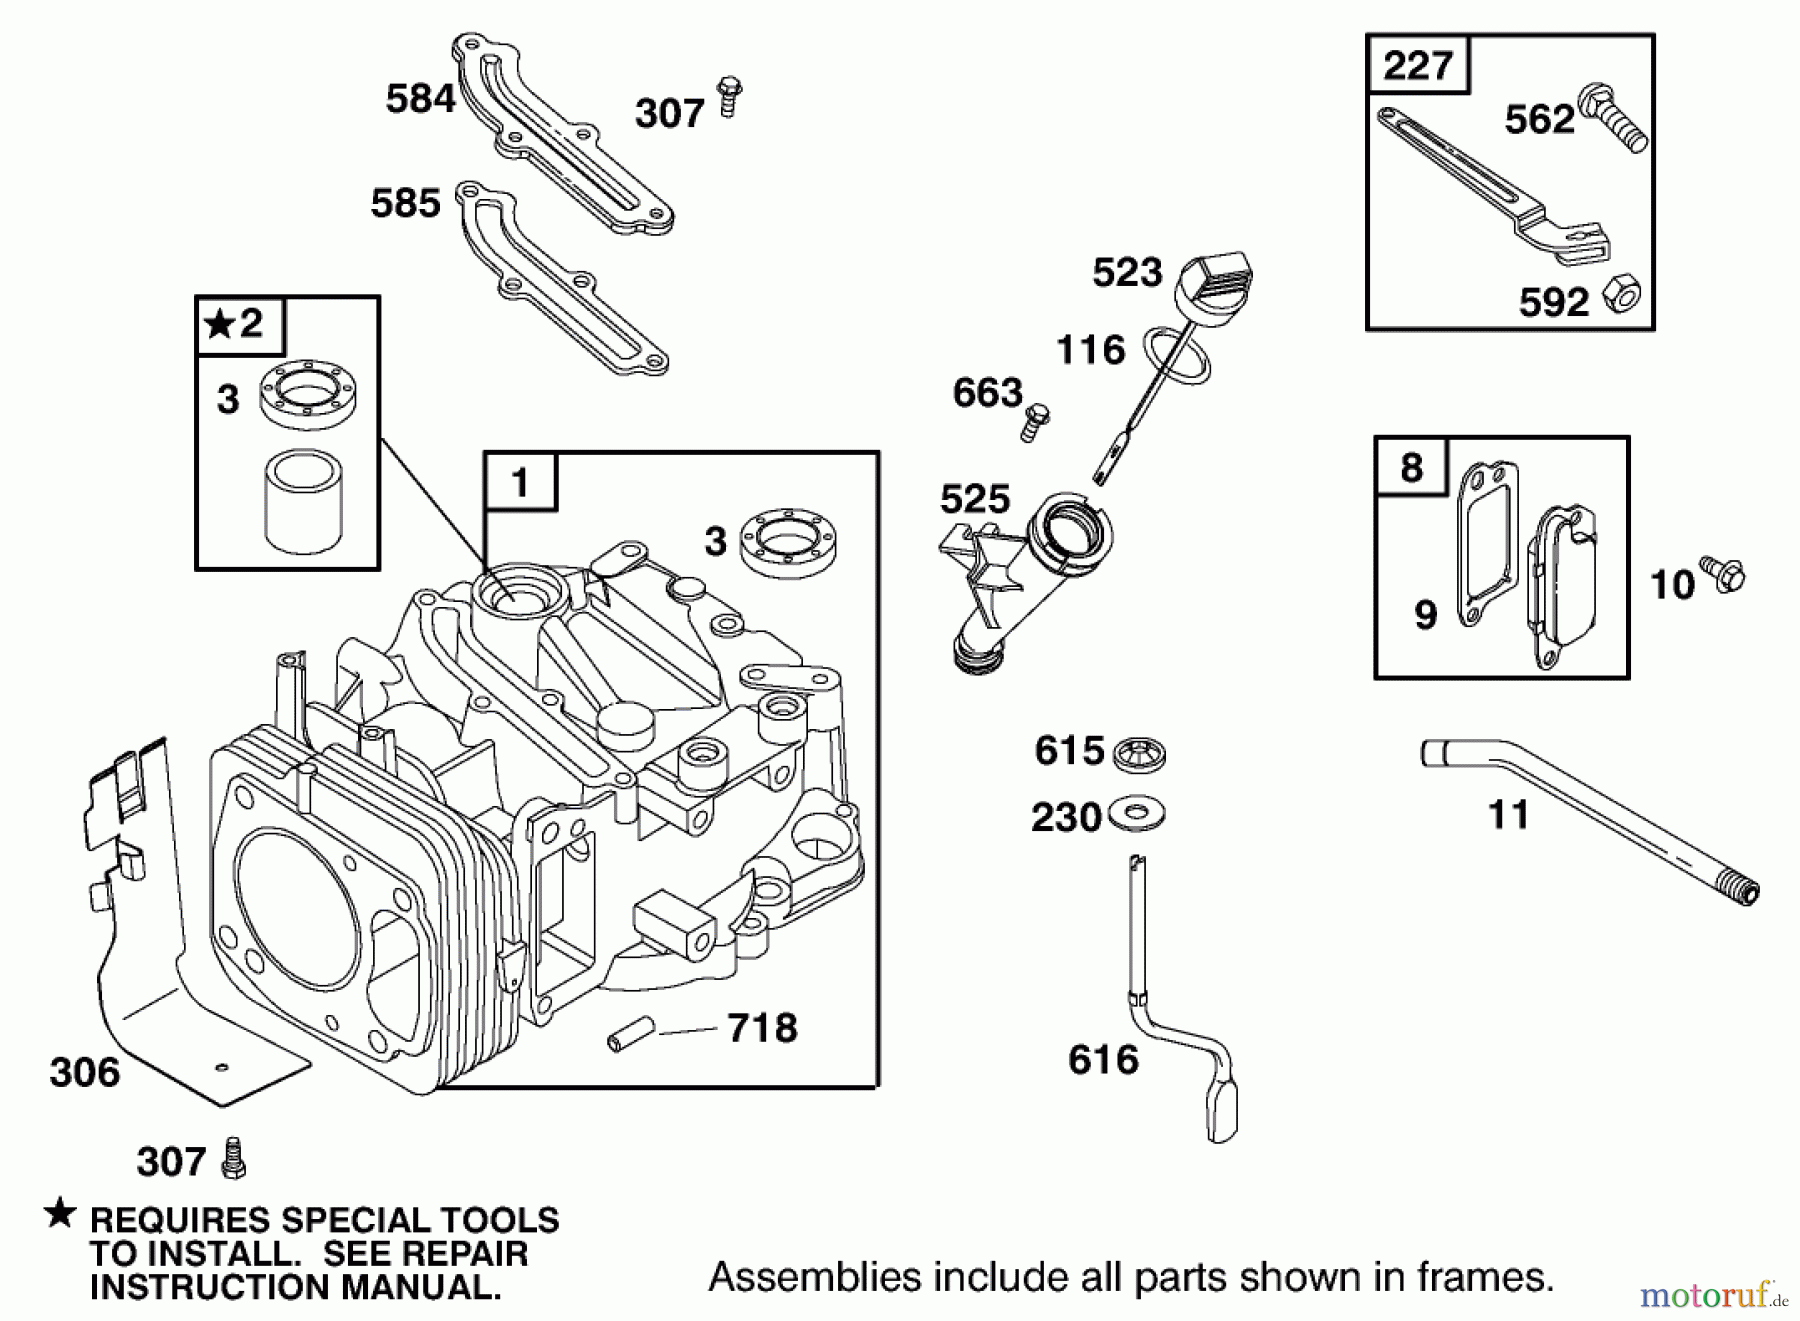  Toro Neu Mowers, Walk-Behind Seite 2 22162 - Toro Recycler Mower, 1999 (9900001-9999999) ENGINE GTS-200 #1